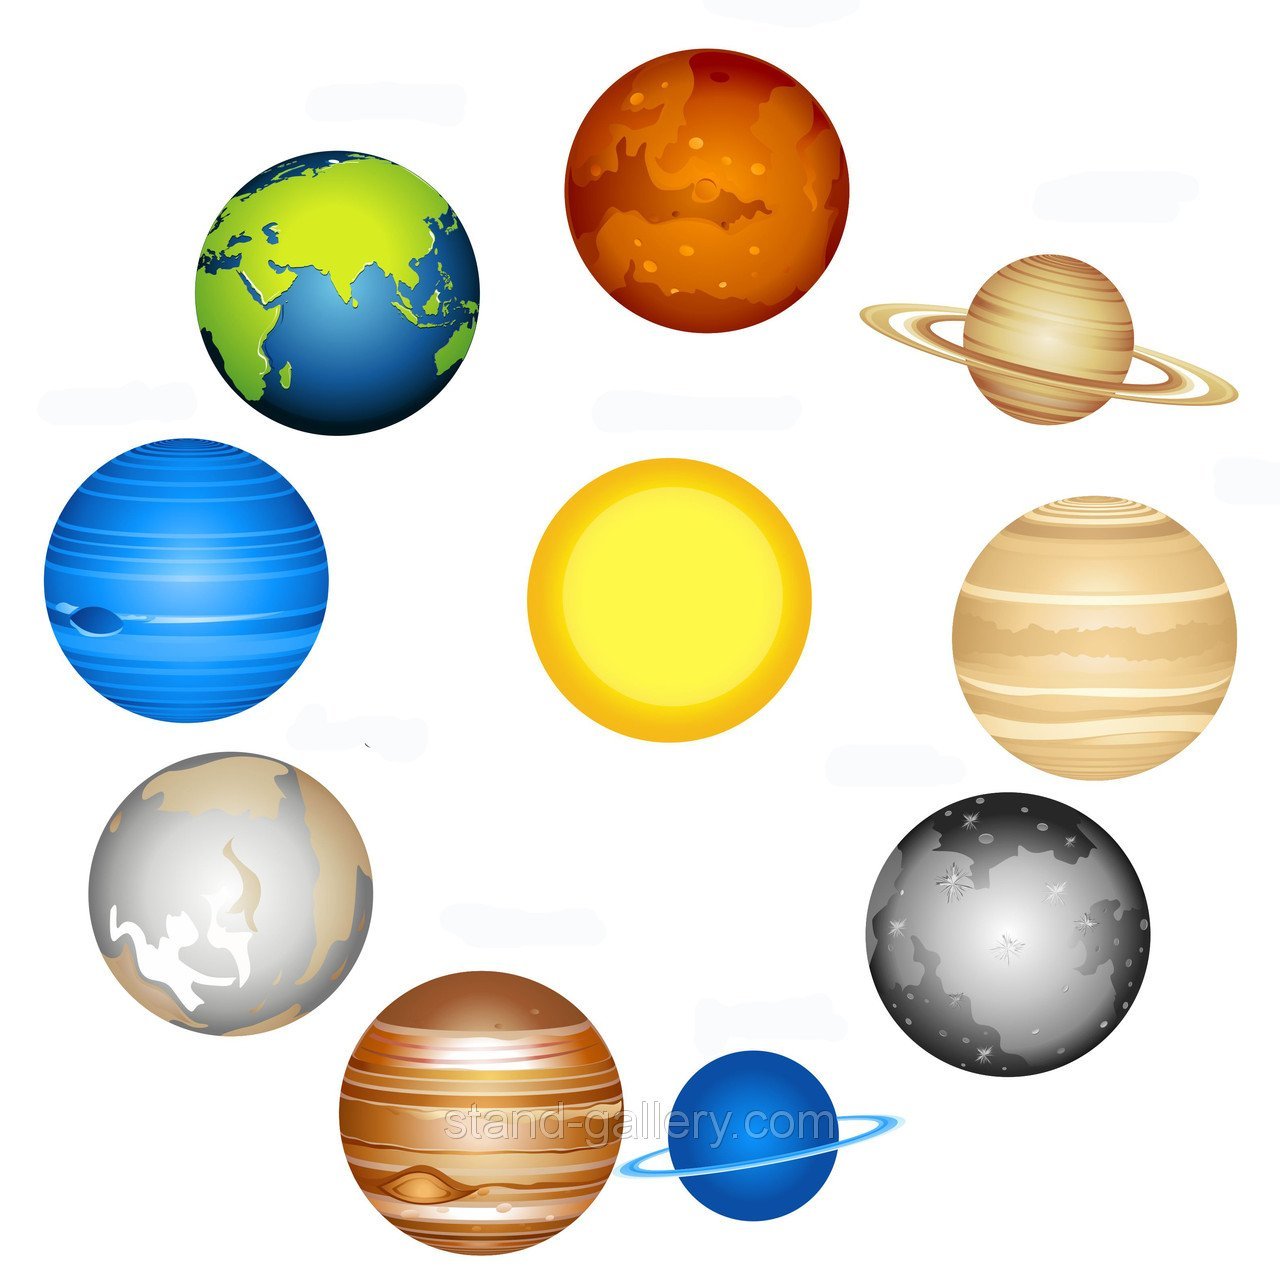 Картинки планеты солнечной системы для детей распечатать. Планеты солнечной системы для детей. Солнечная система для детей. Планеты для дошкольников. Планеты солнечной системы для дошкольников.